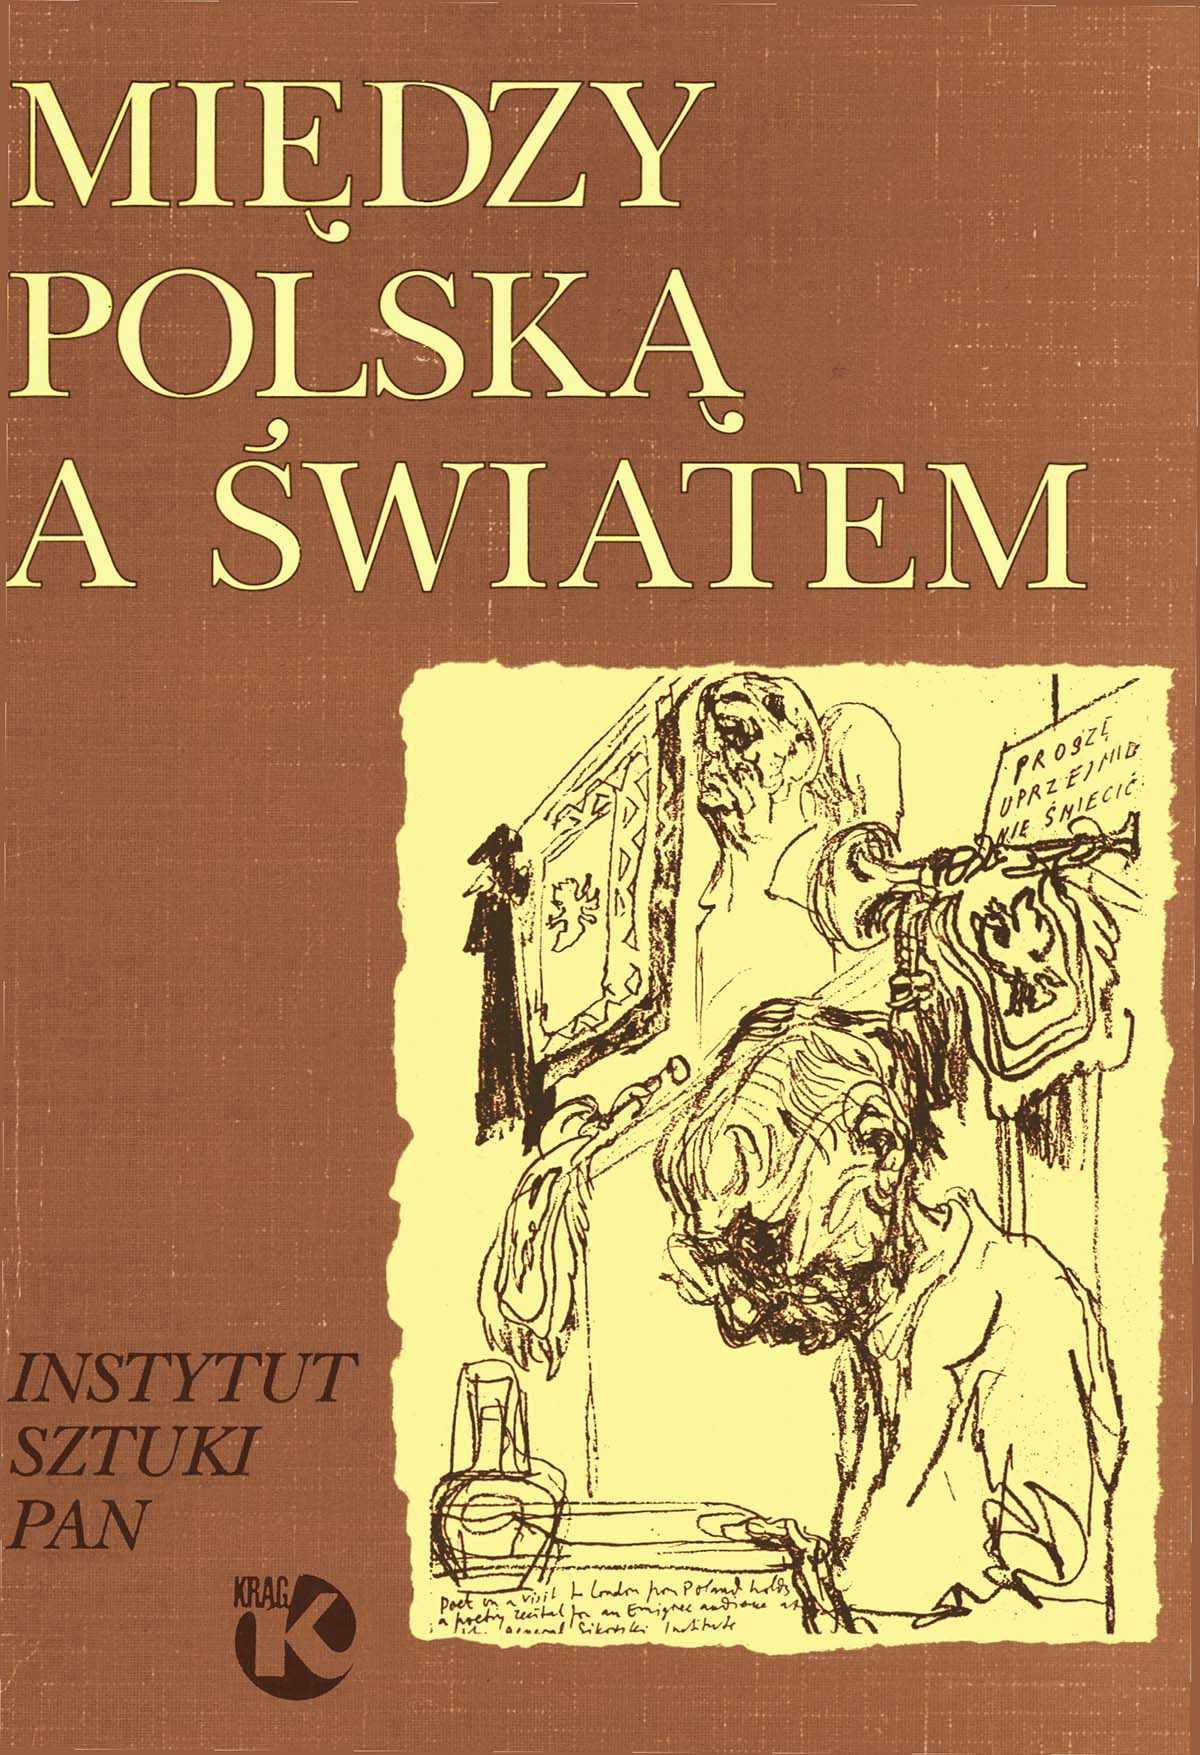 Między Polską a światem : kultura emigracyjna po 1939 roku / pod red. Marty Fik